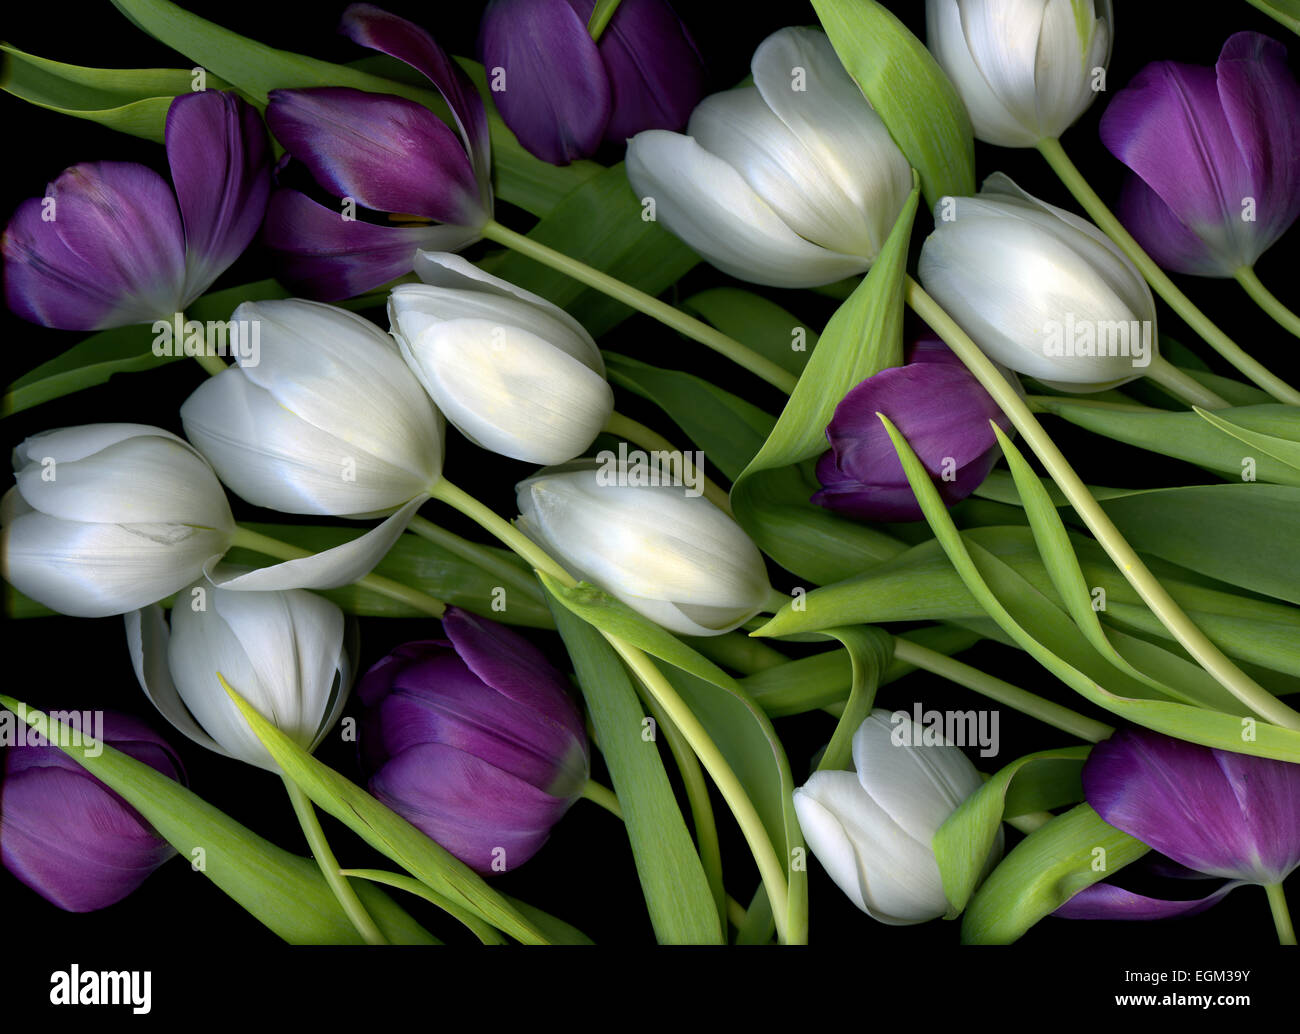 Fresco tagliato con gambo verde viola e bianco tulipani disposte insieme Foto Stock